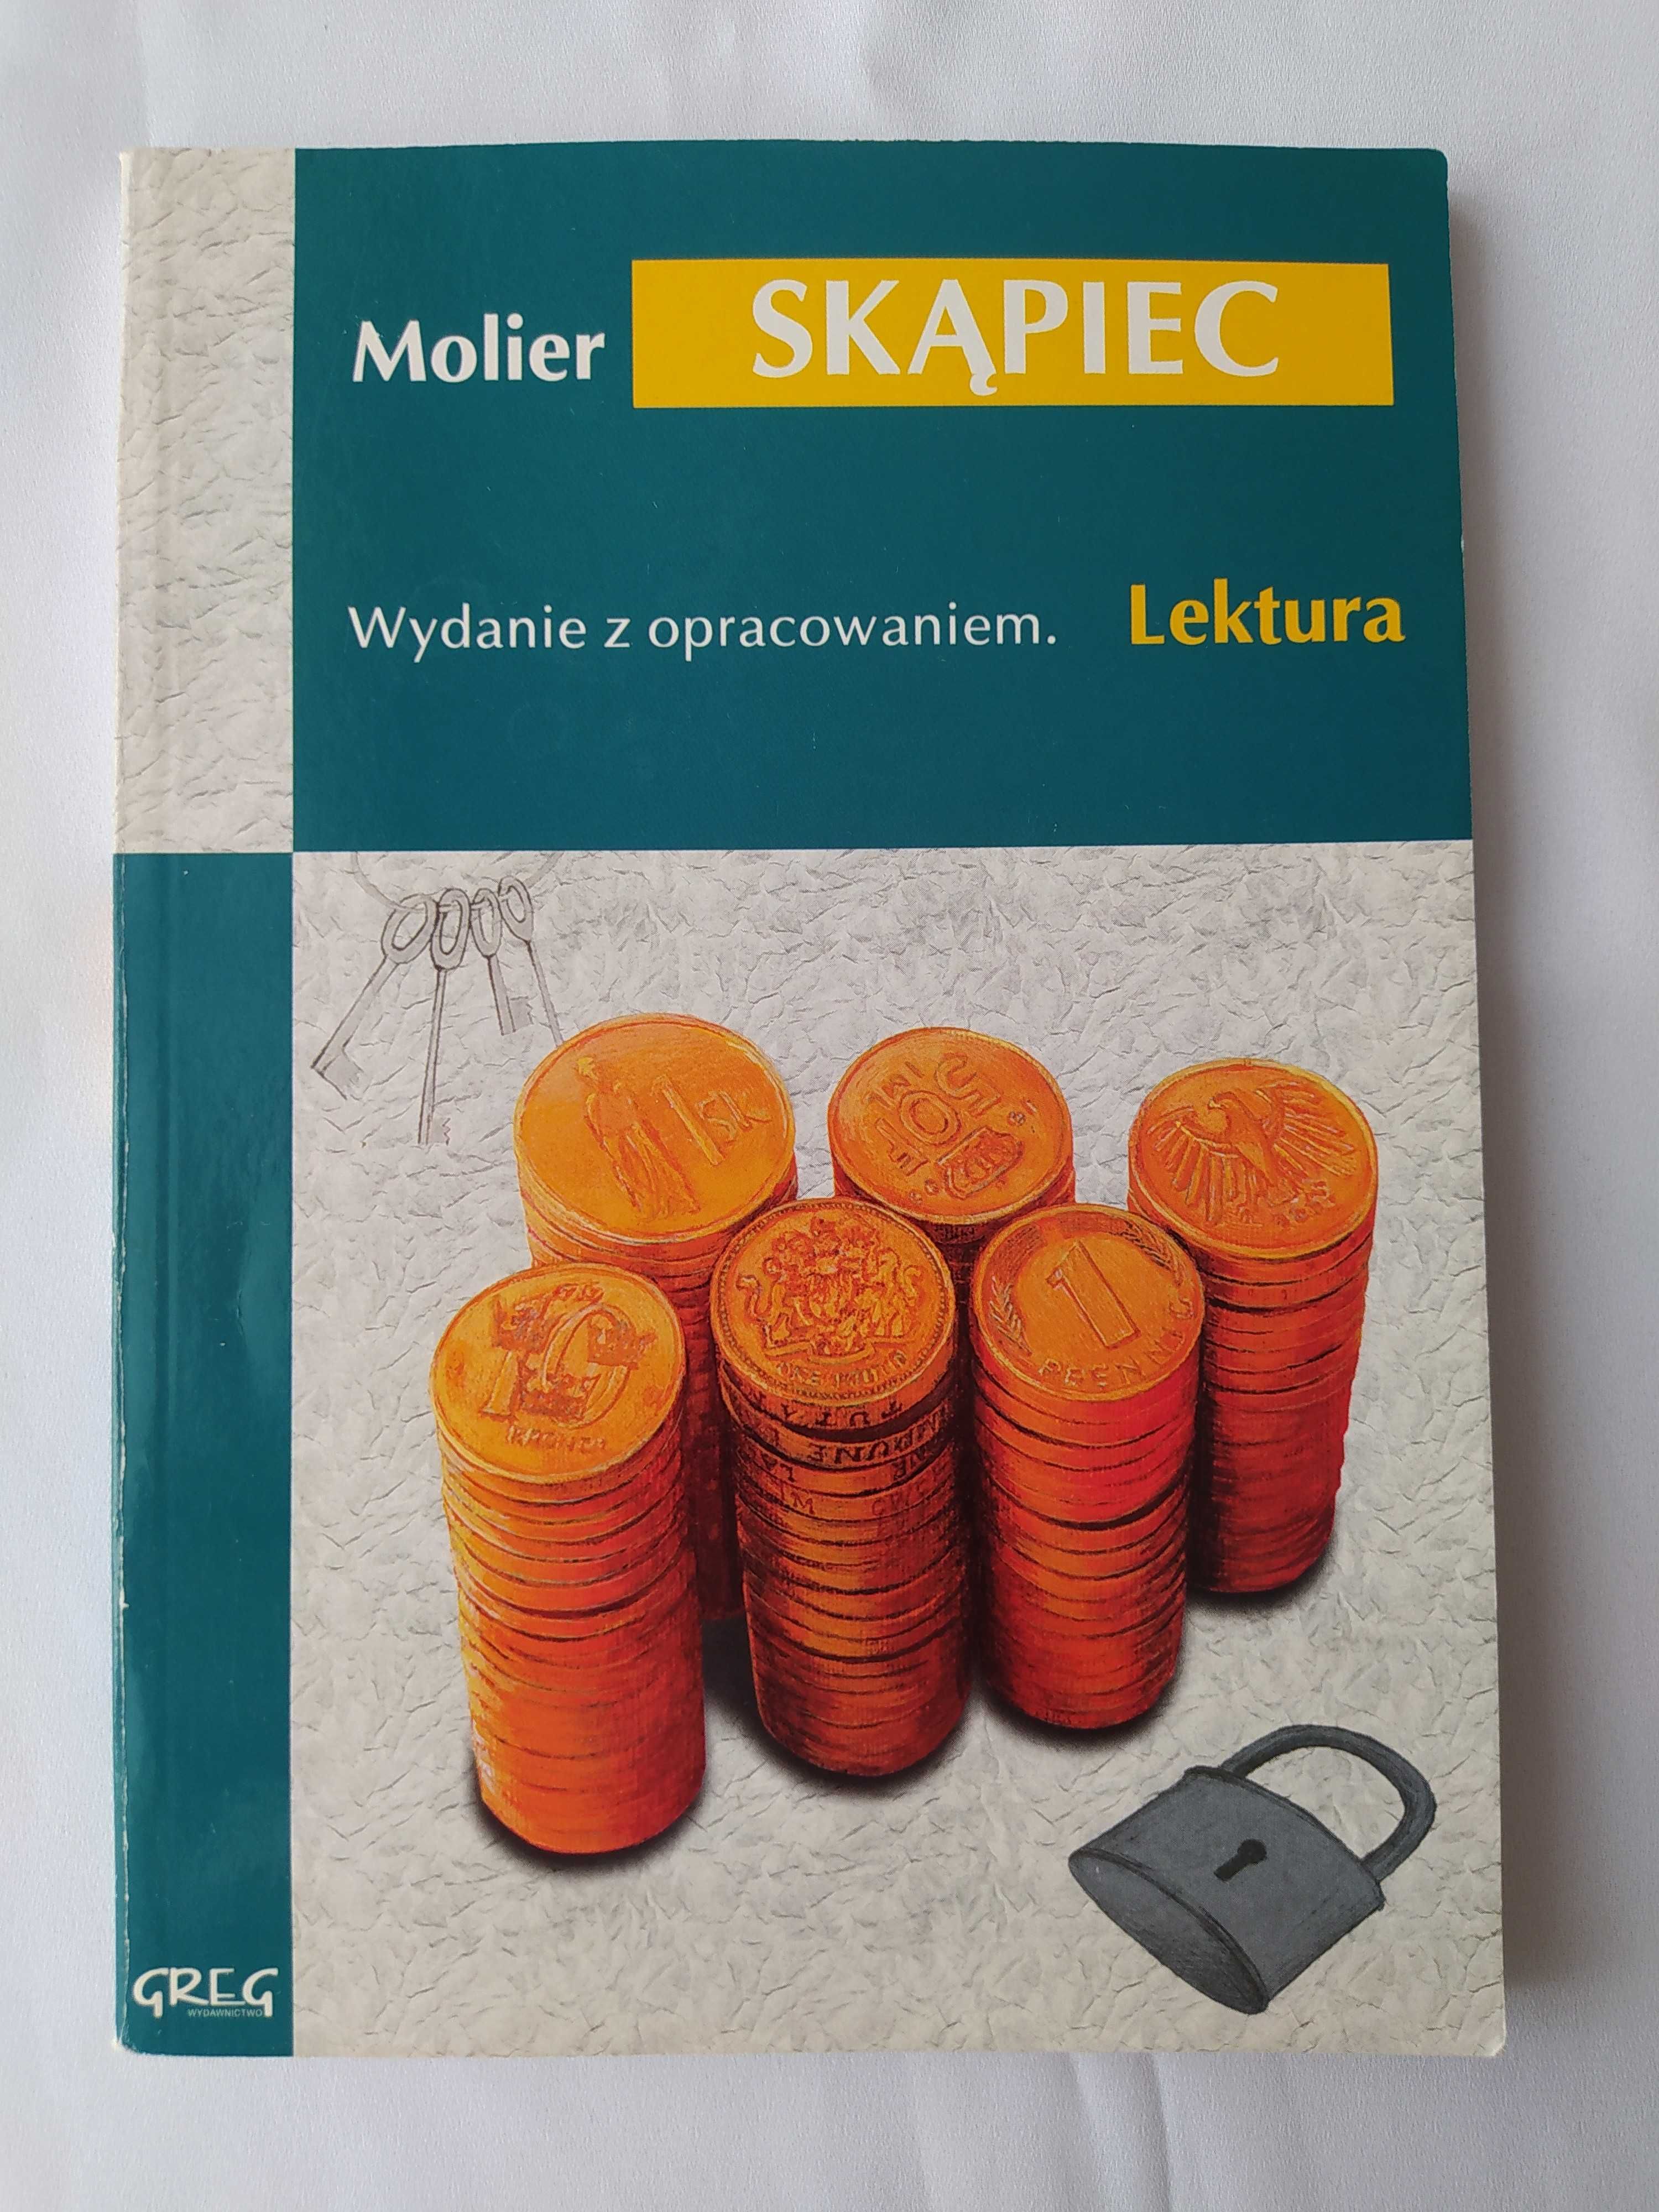 Skąpiec – Molier – wydanie z opracowaniem